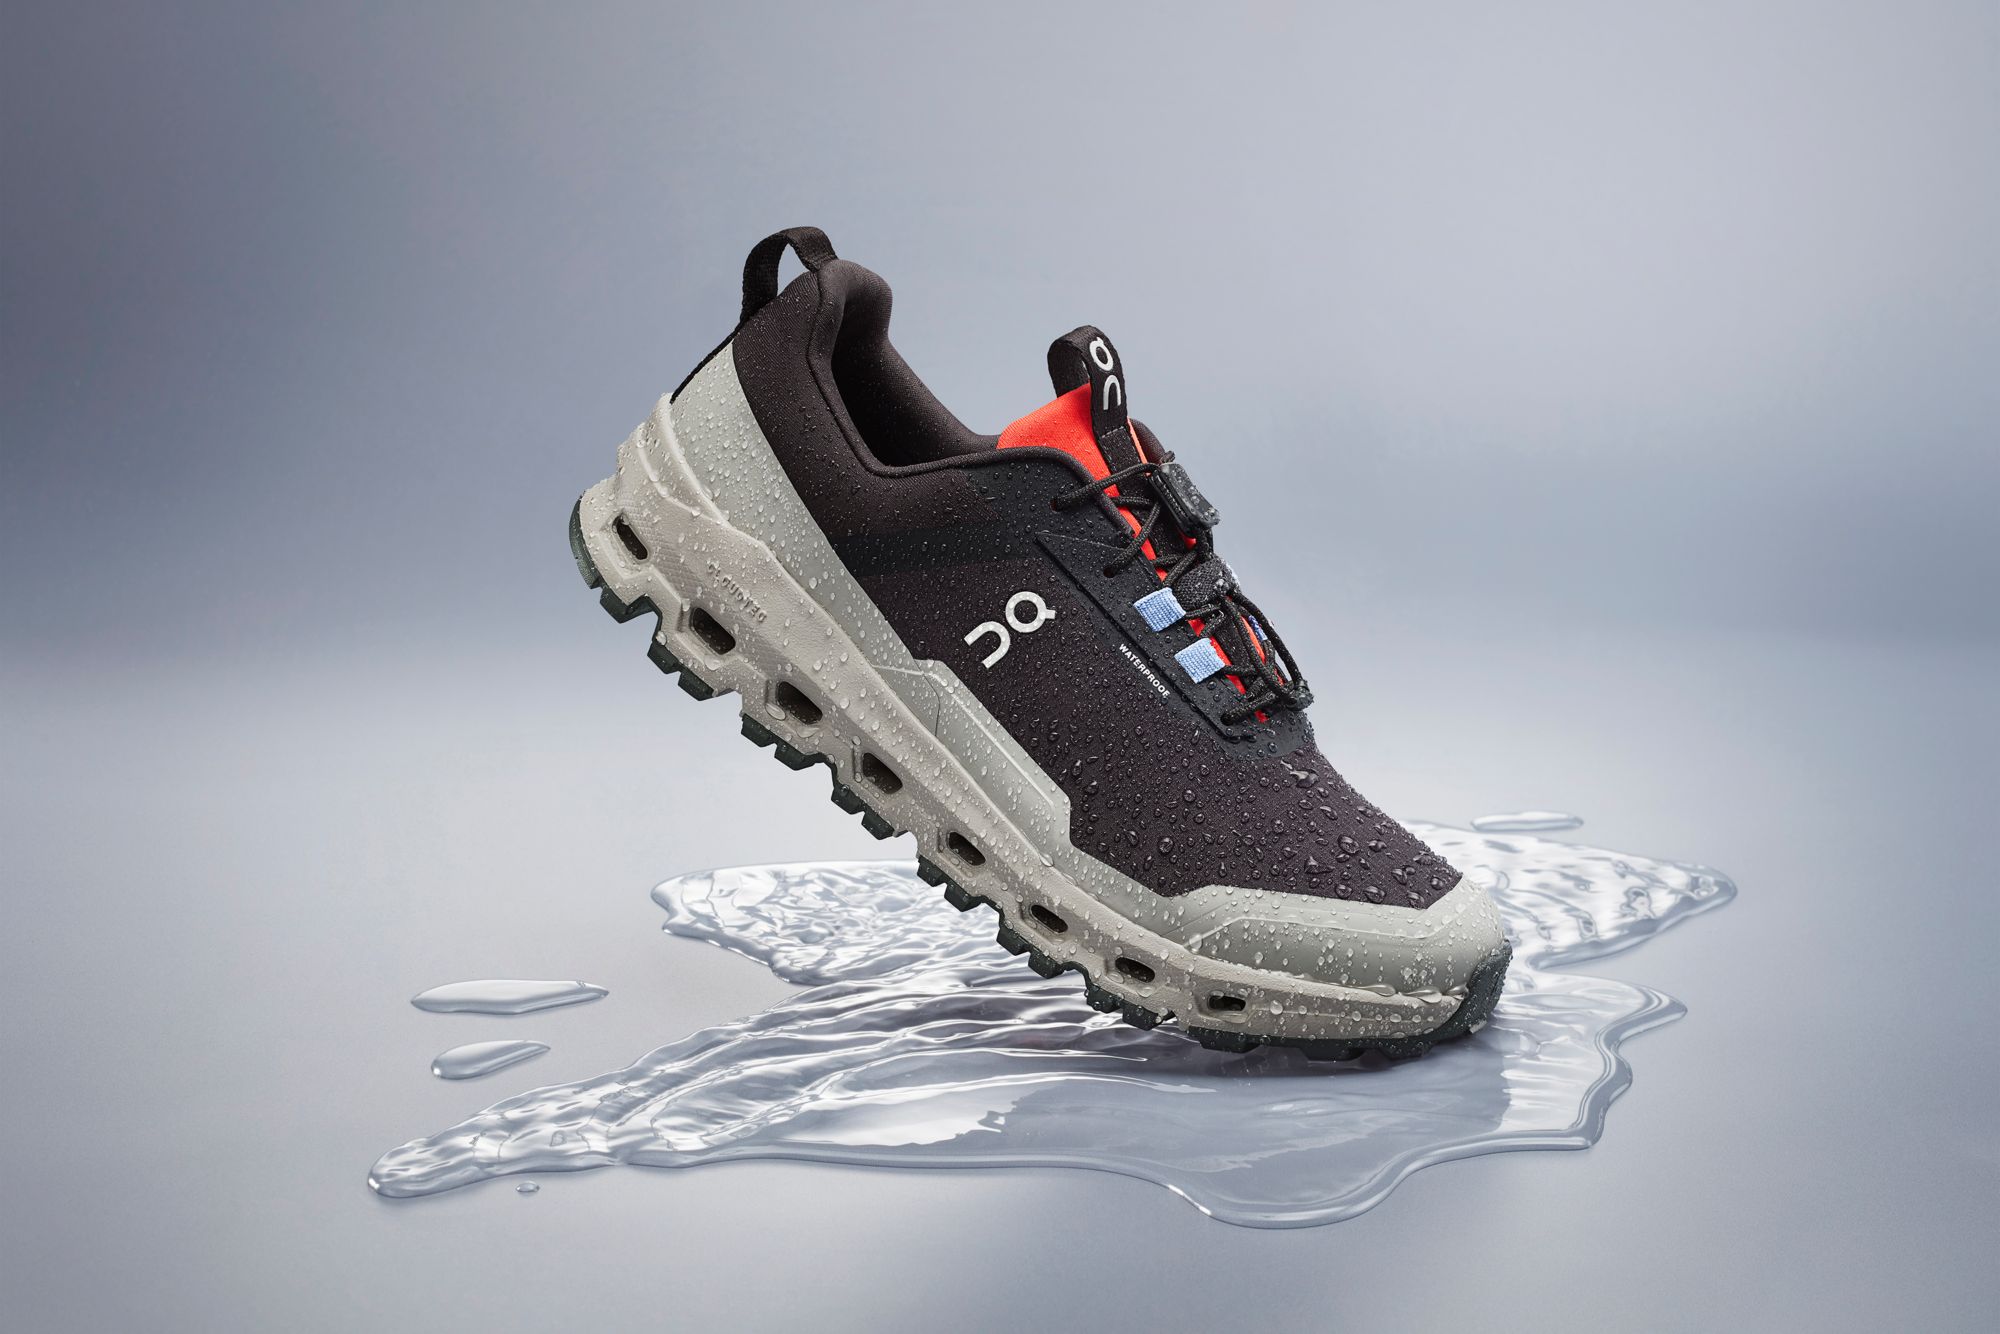 On Kids' Grade School Cloudhero Waterproof Shoes